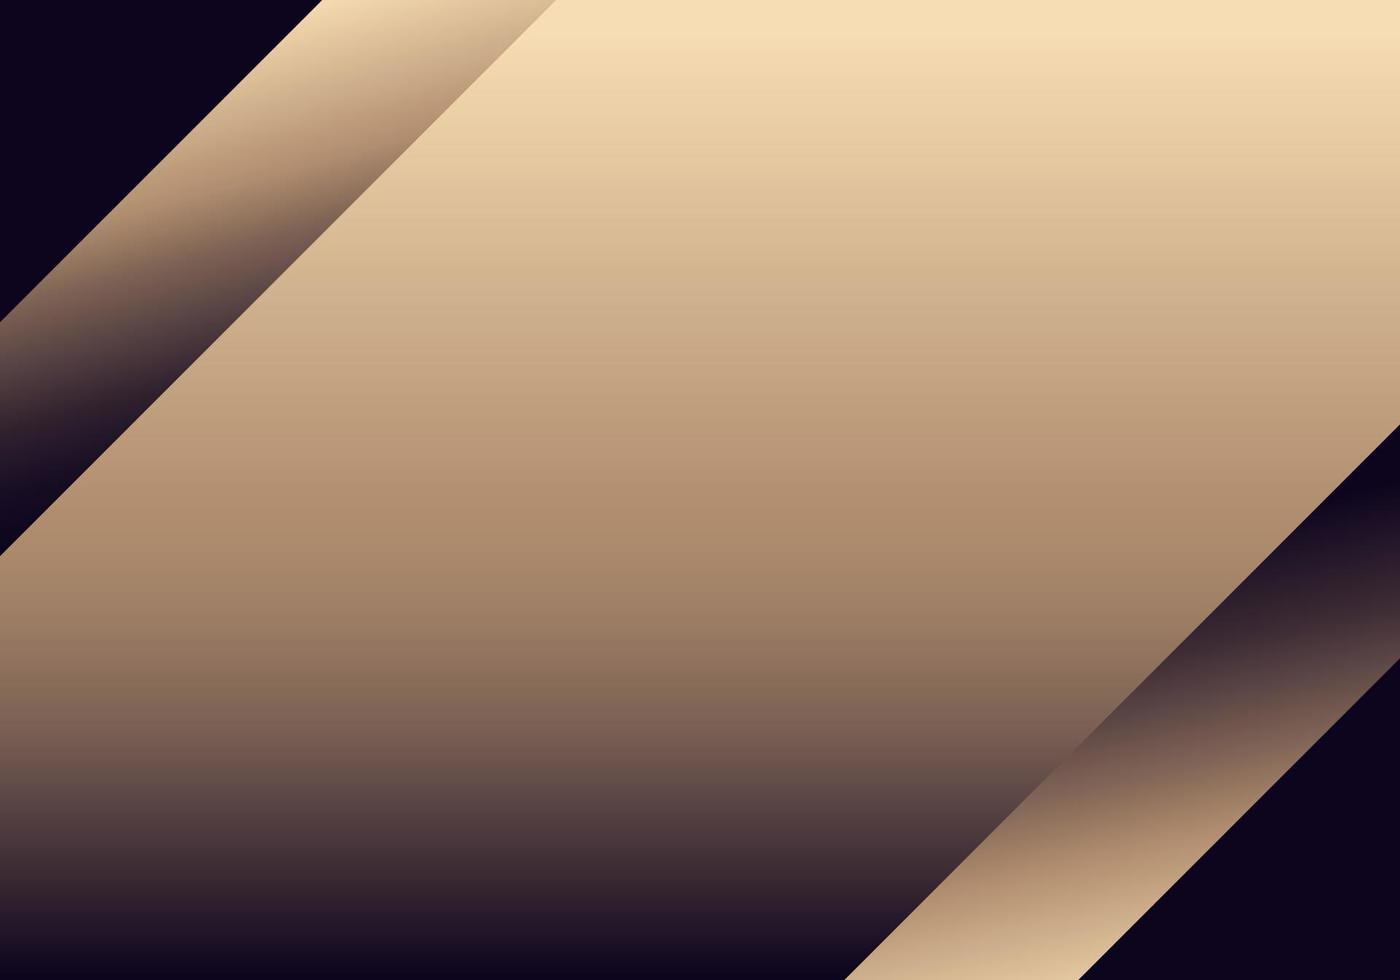 abstrait élégant minimal bande dorée diagonale sur fond sombre style de luxe vecteur